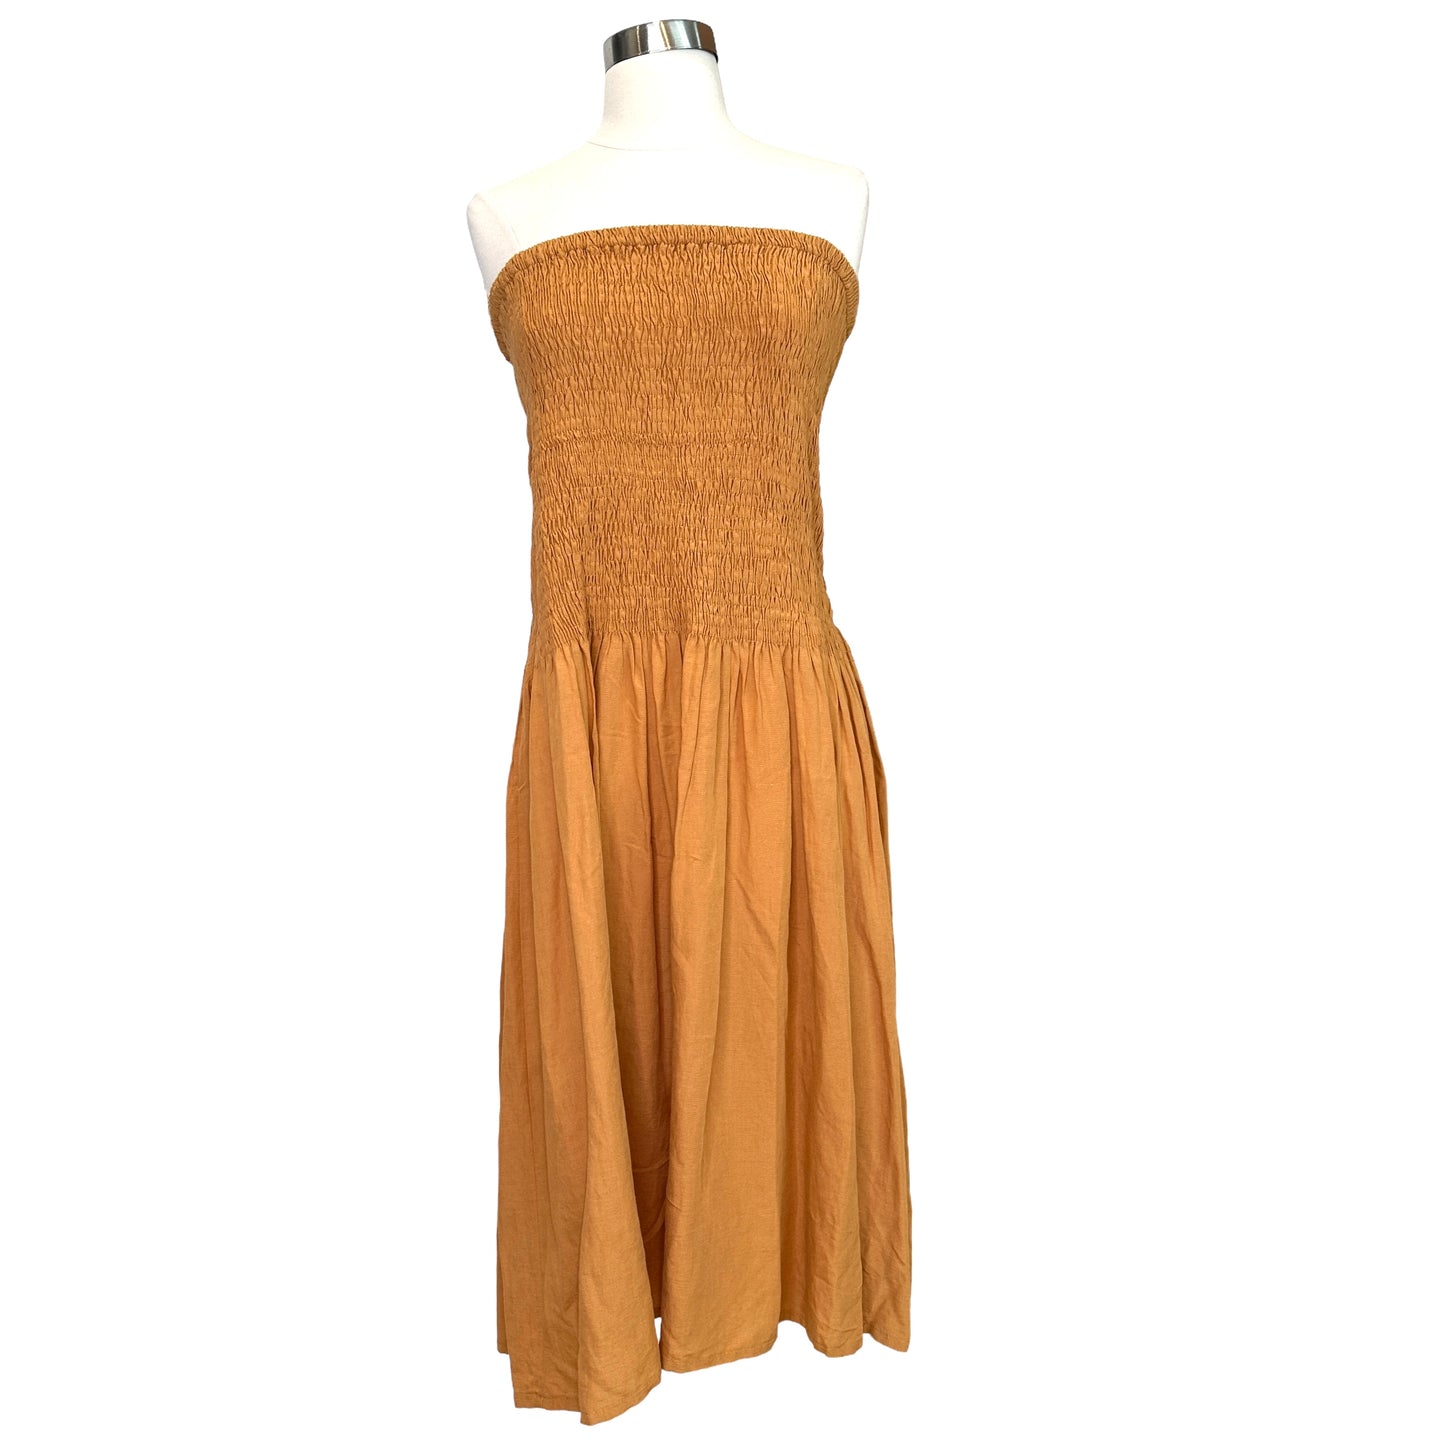 Linen Ocre Dress - L